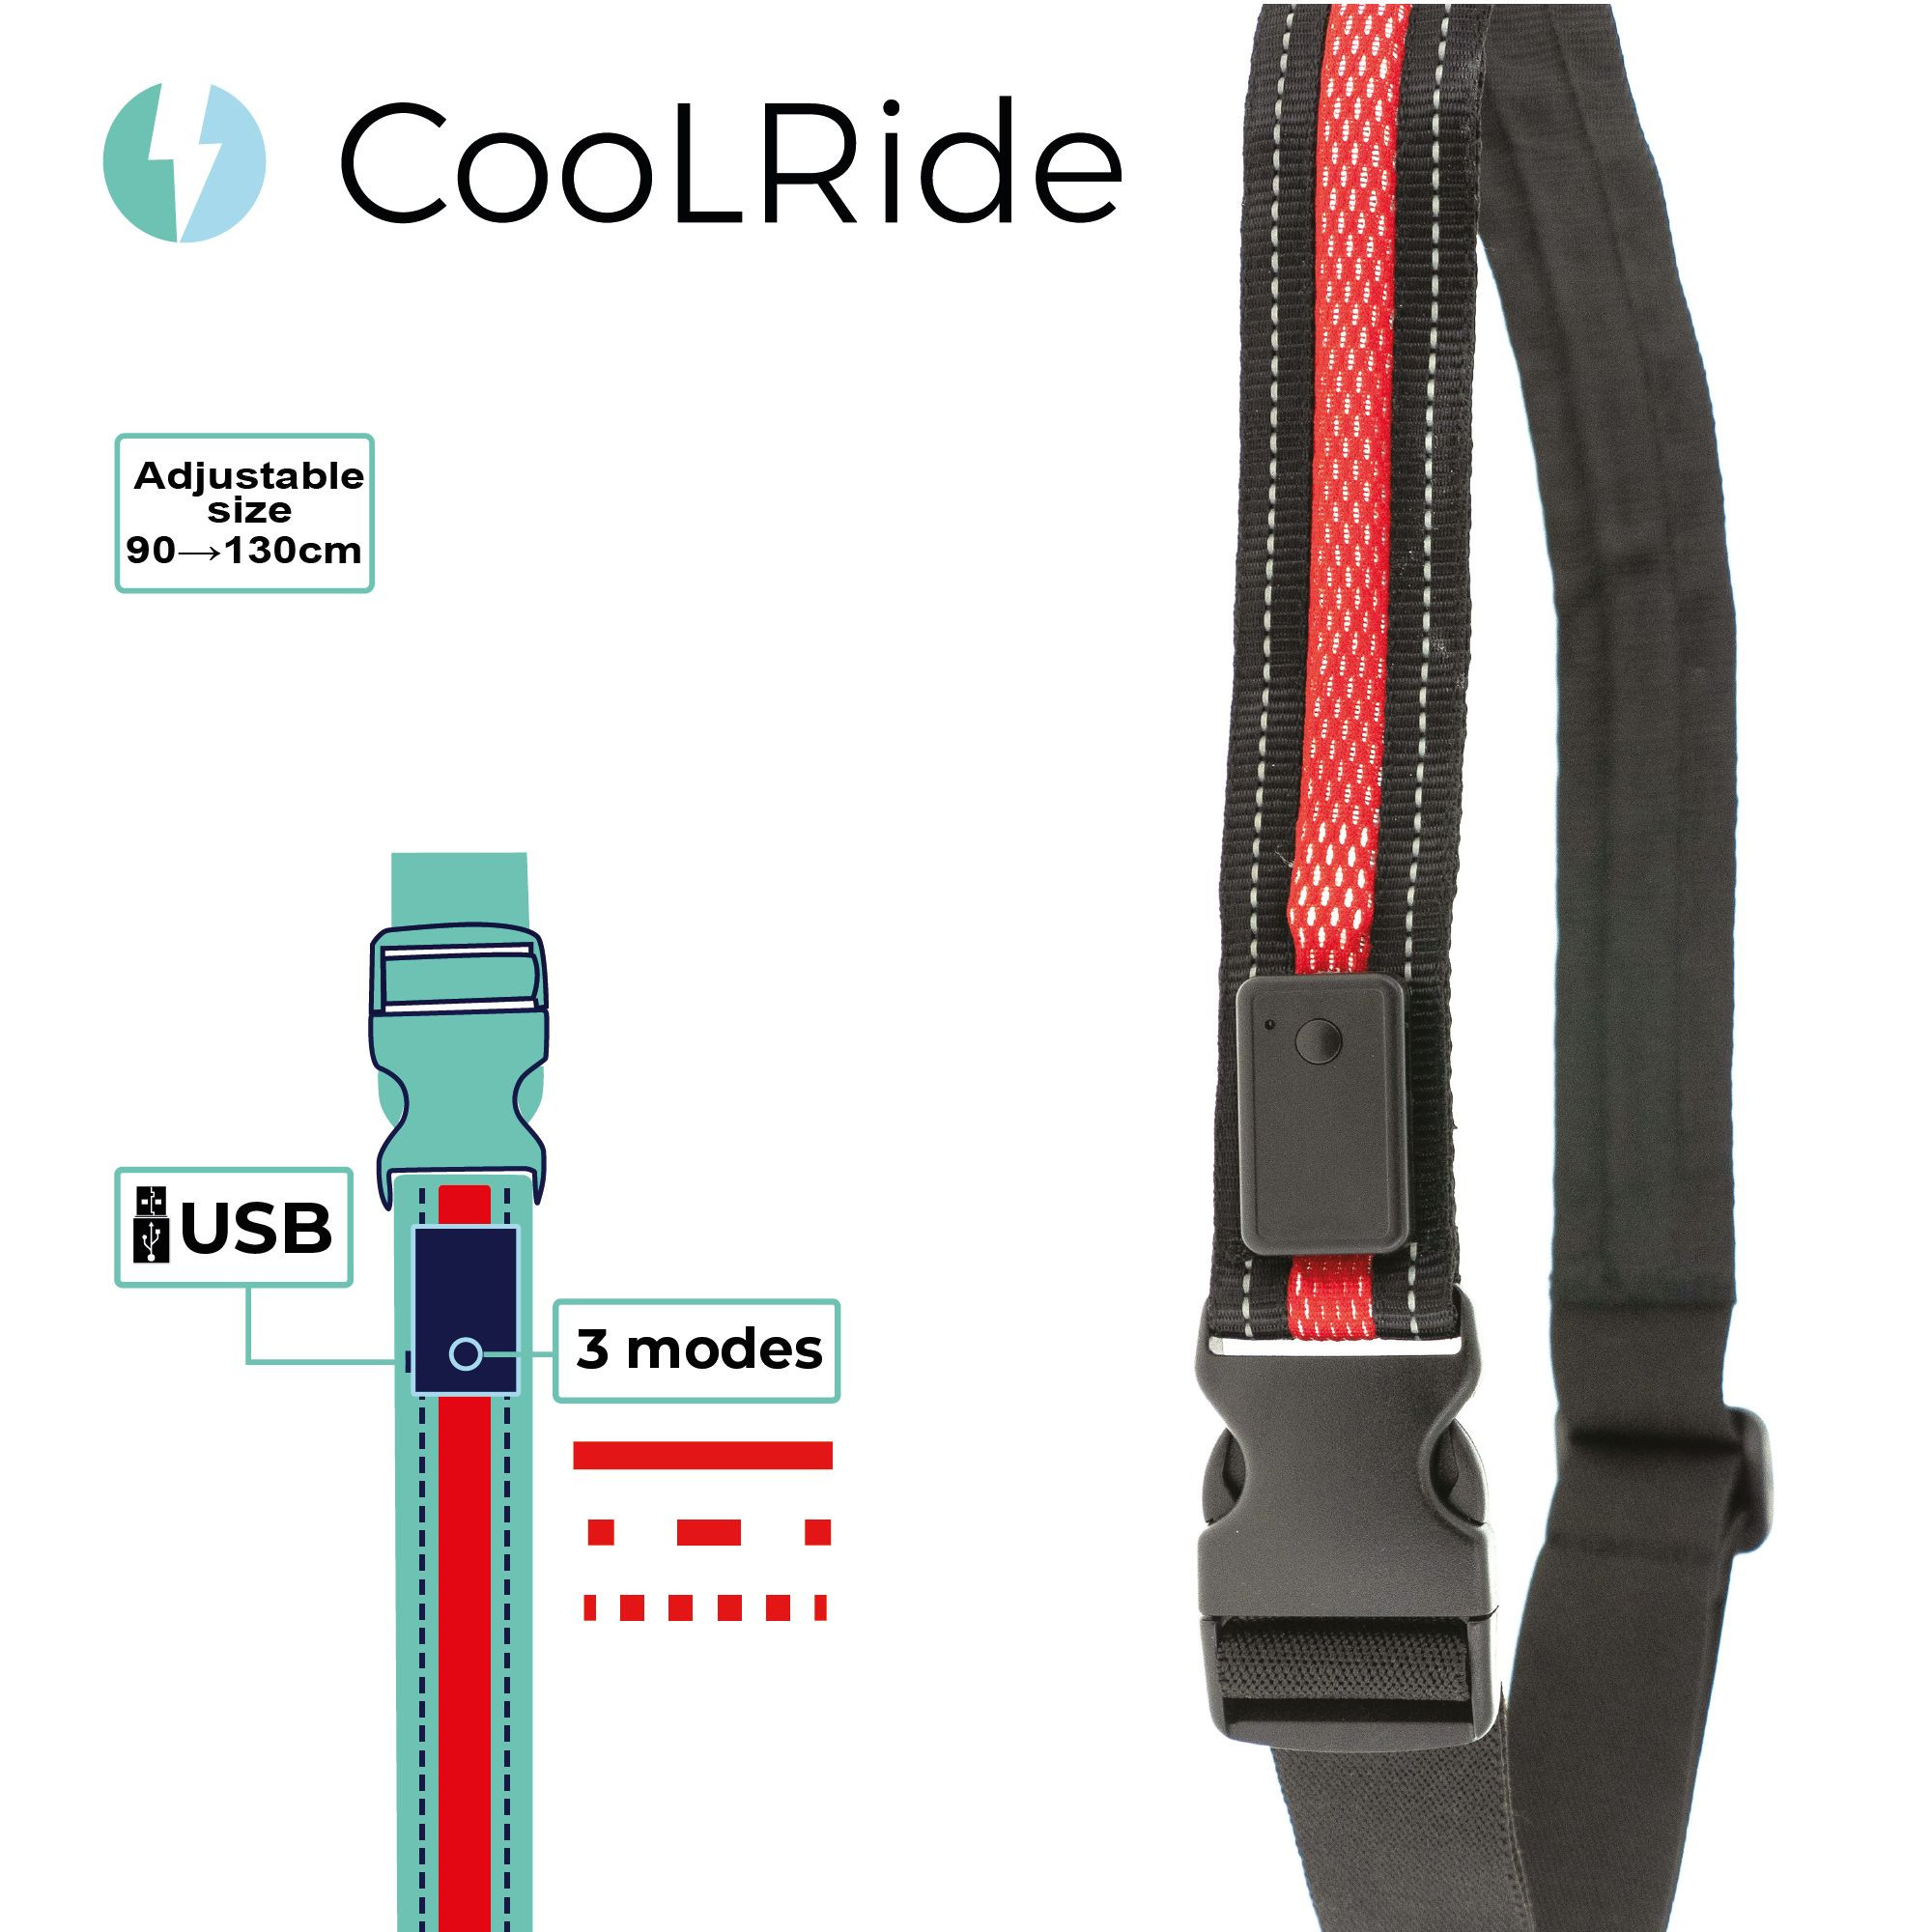 Cool ride CEINTURE LED USB